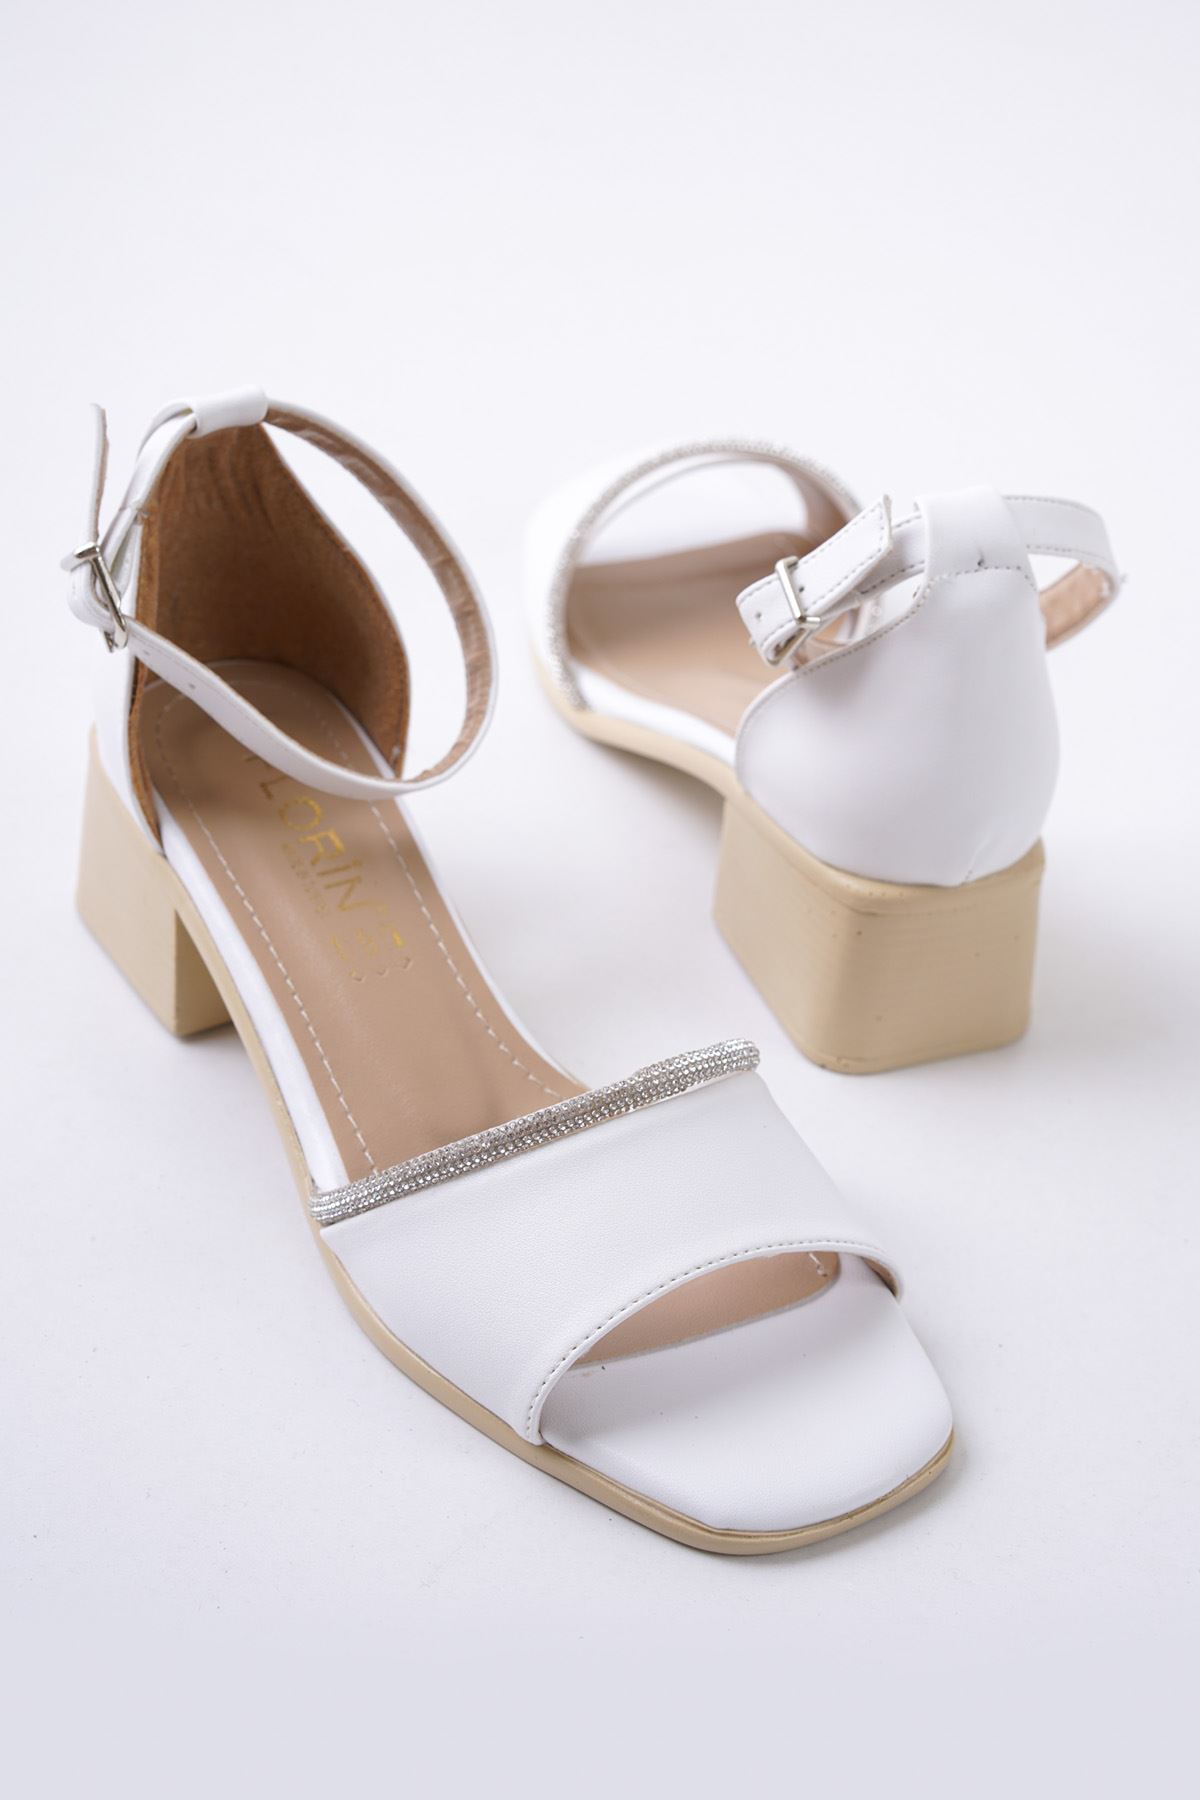 Auron Beyaz Mat Deri Kadın Topuklu Ayakkabı